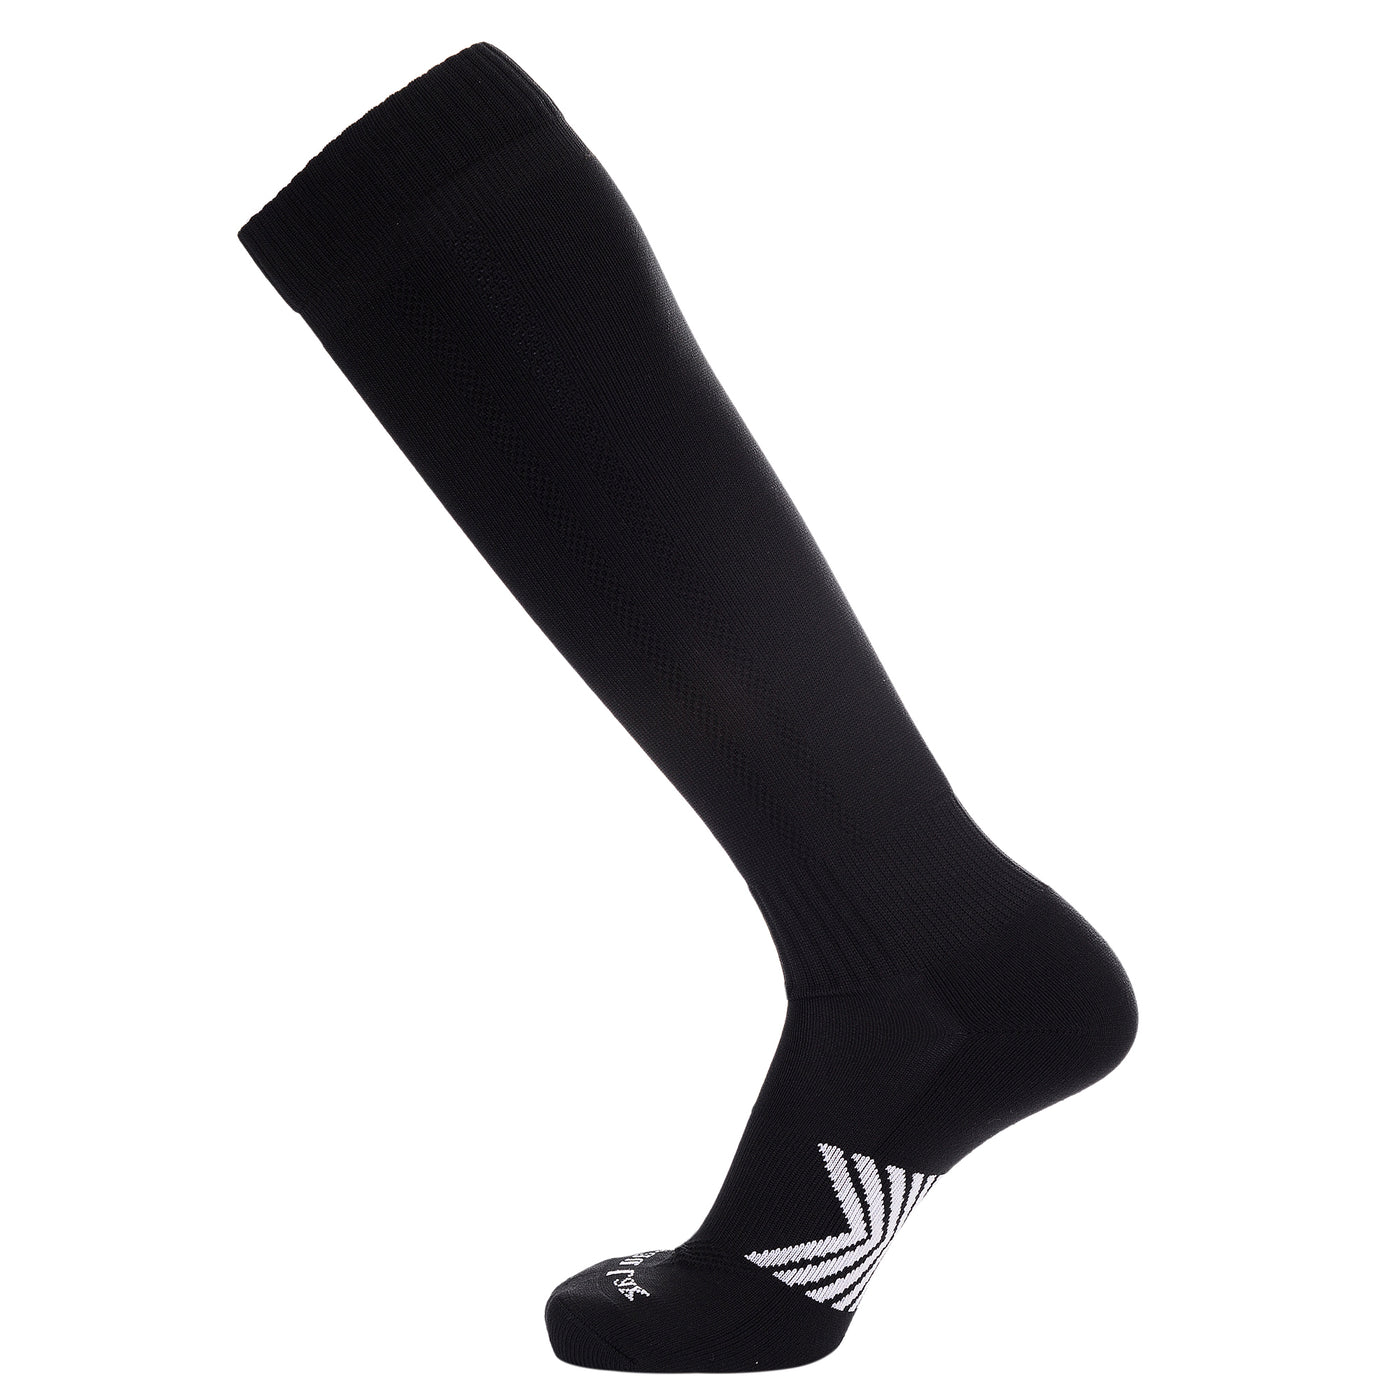 Laulax 8 pares de calcetines de fútbol profesionales Coolmax para hombre en varios colores, talla UK 7 - 11 / Europa 40 - 46